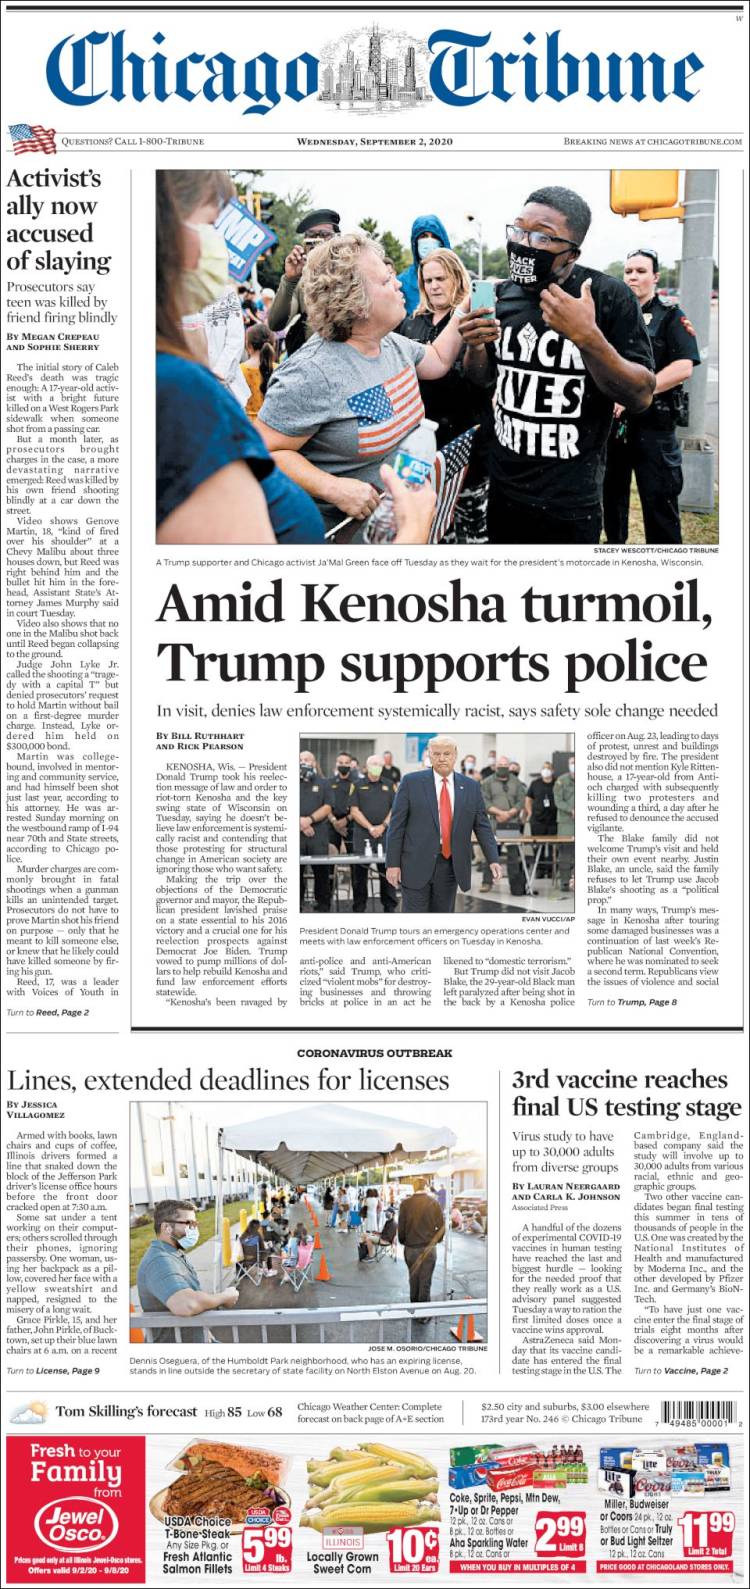 صفحه اول روزنامه شیکاگو تریبون/ در میان آشوب کنوشا ترامپ از پلیس حمایت کرد